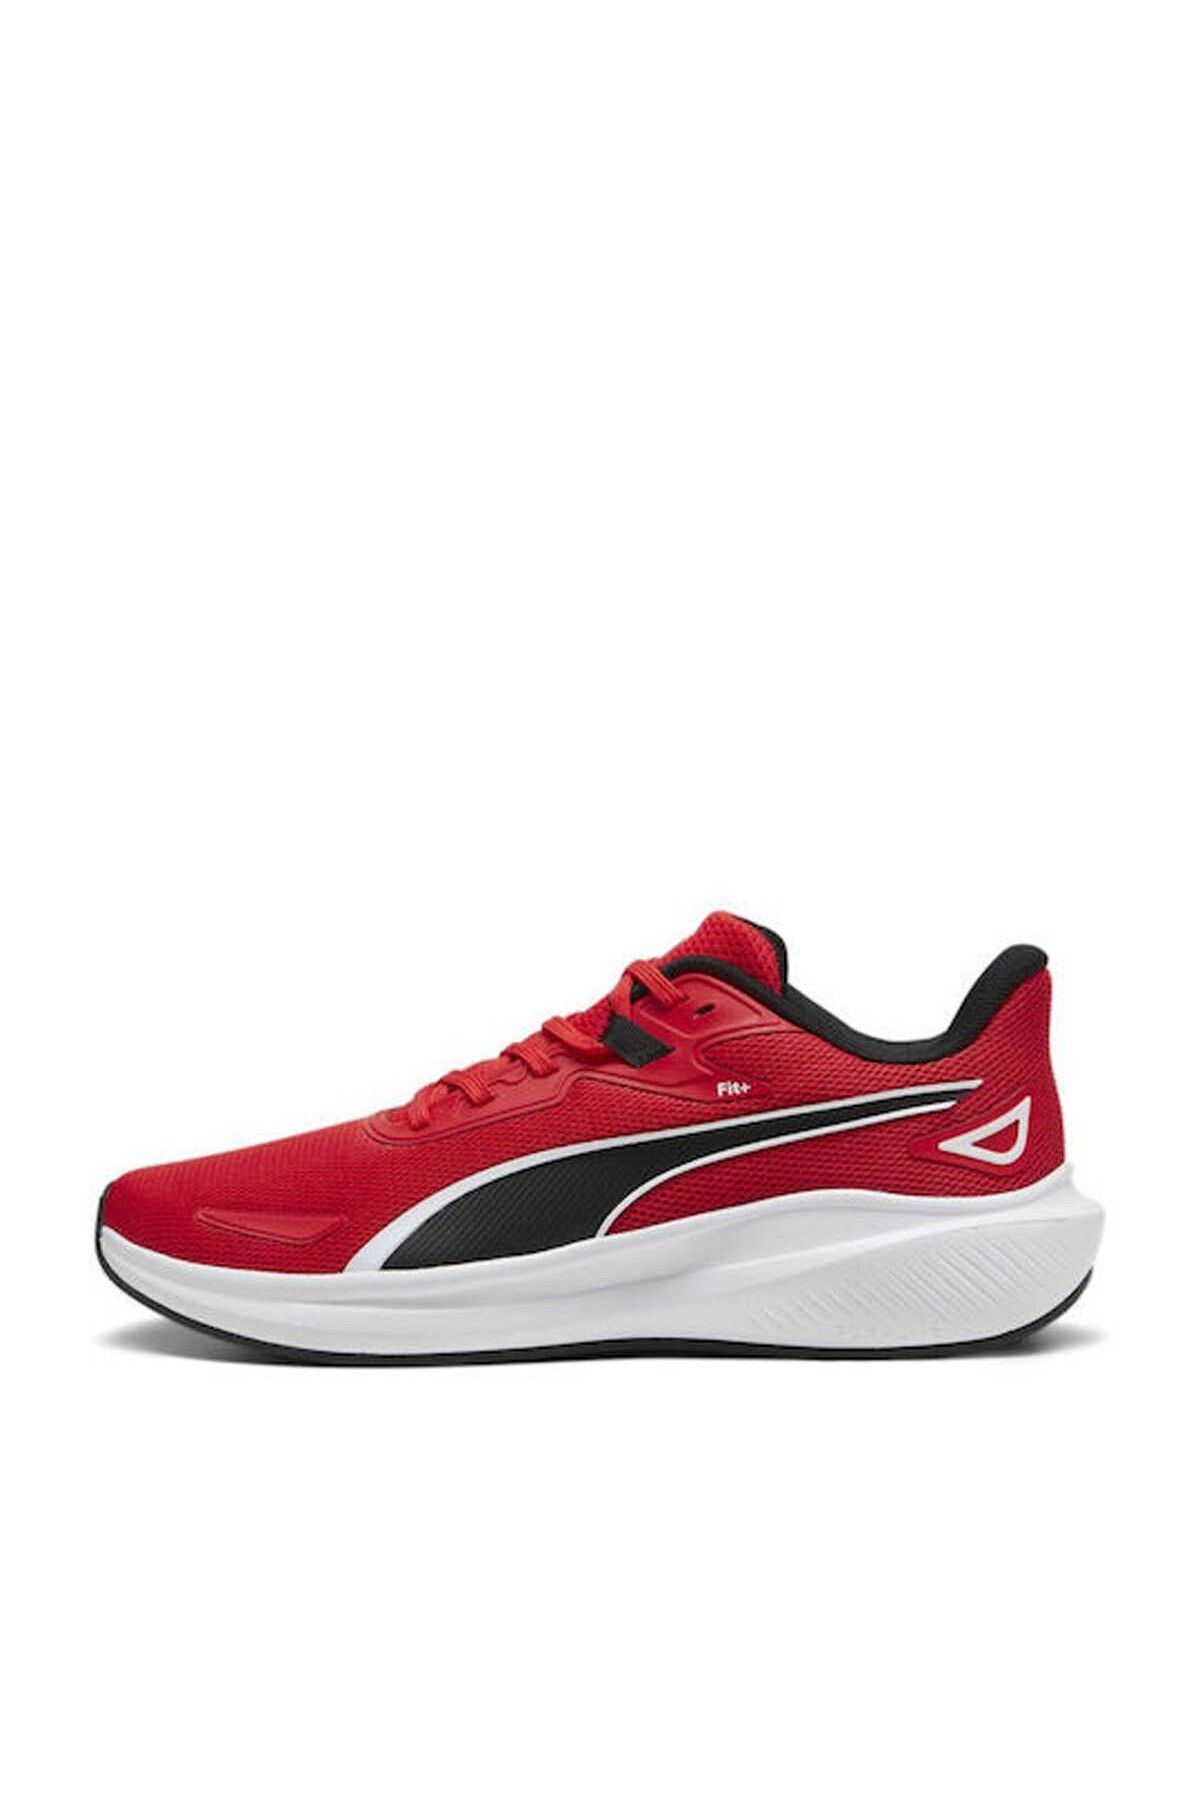 Puma Erkek Sneaker Kırmızı - Siyah 379437-08 Skyrocket Lite